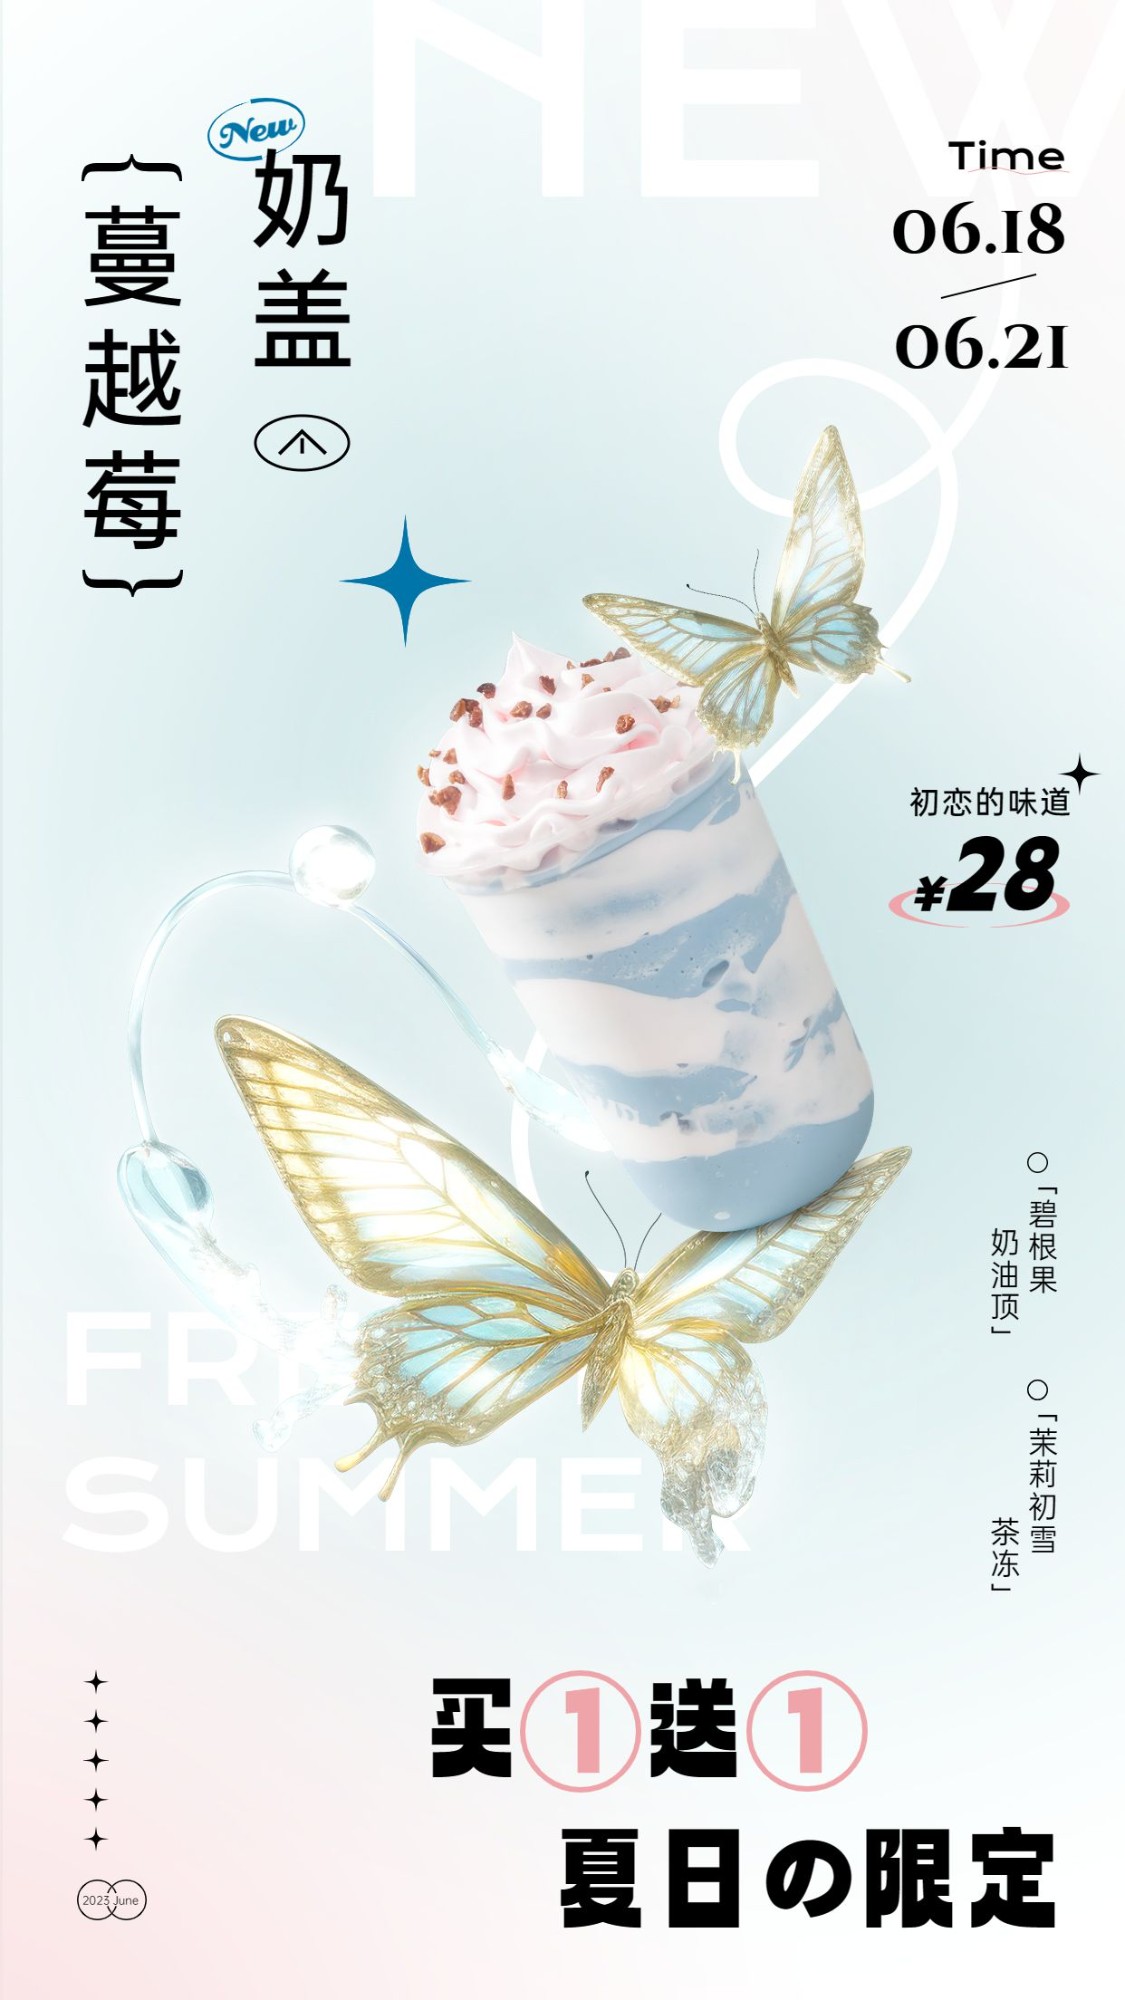 餐饮夏季奶茶酸性风产品营销手机海报AIGC预览效果